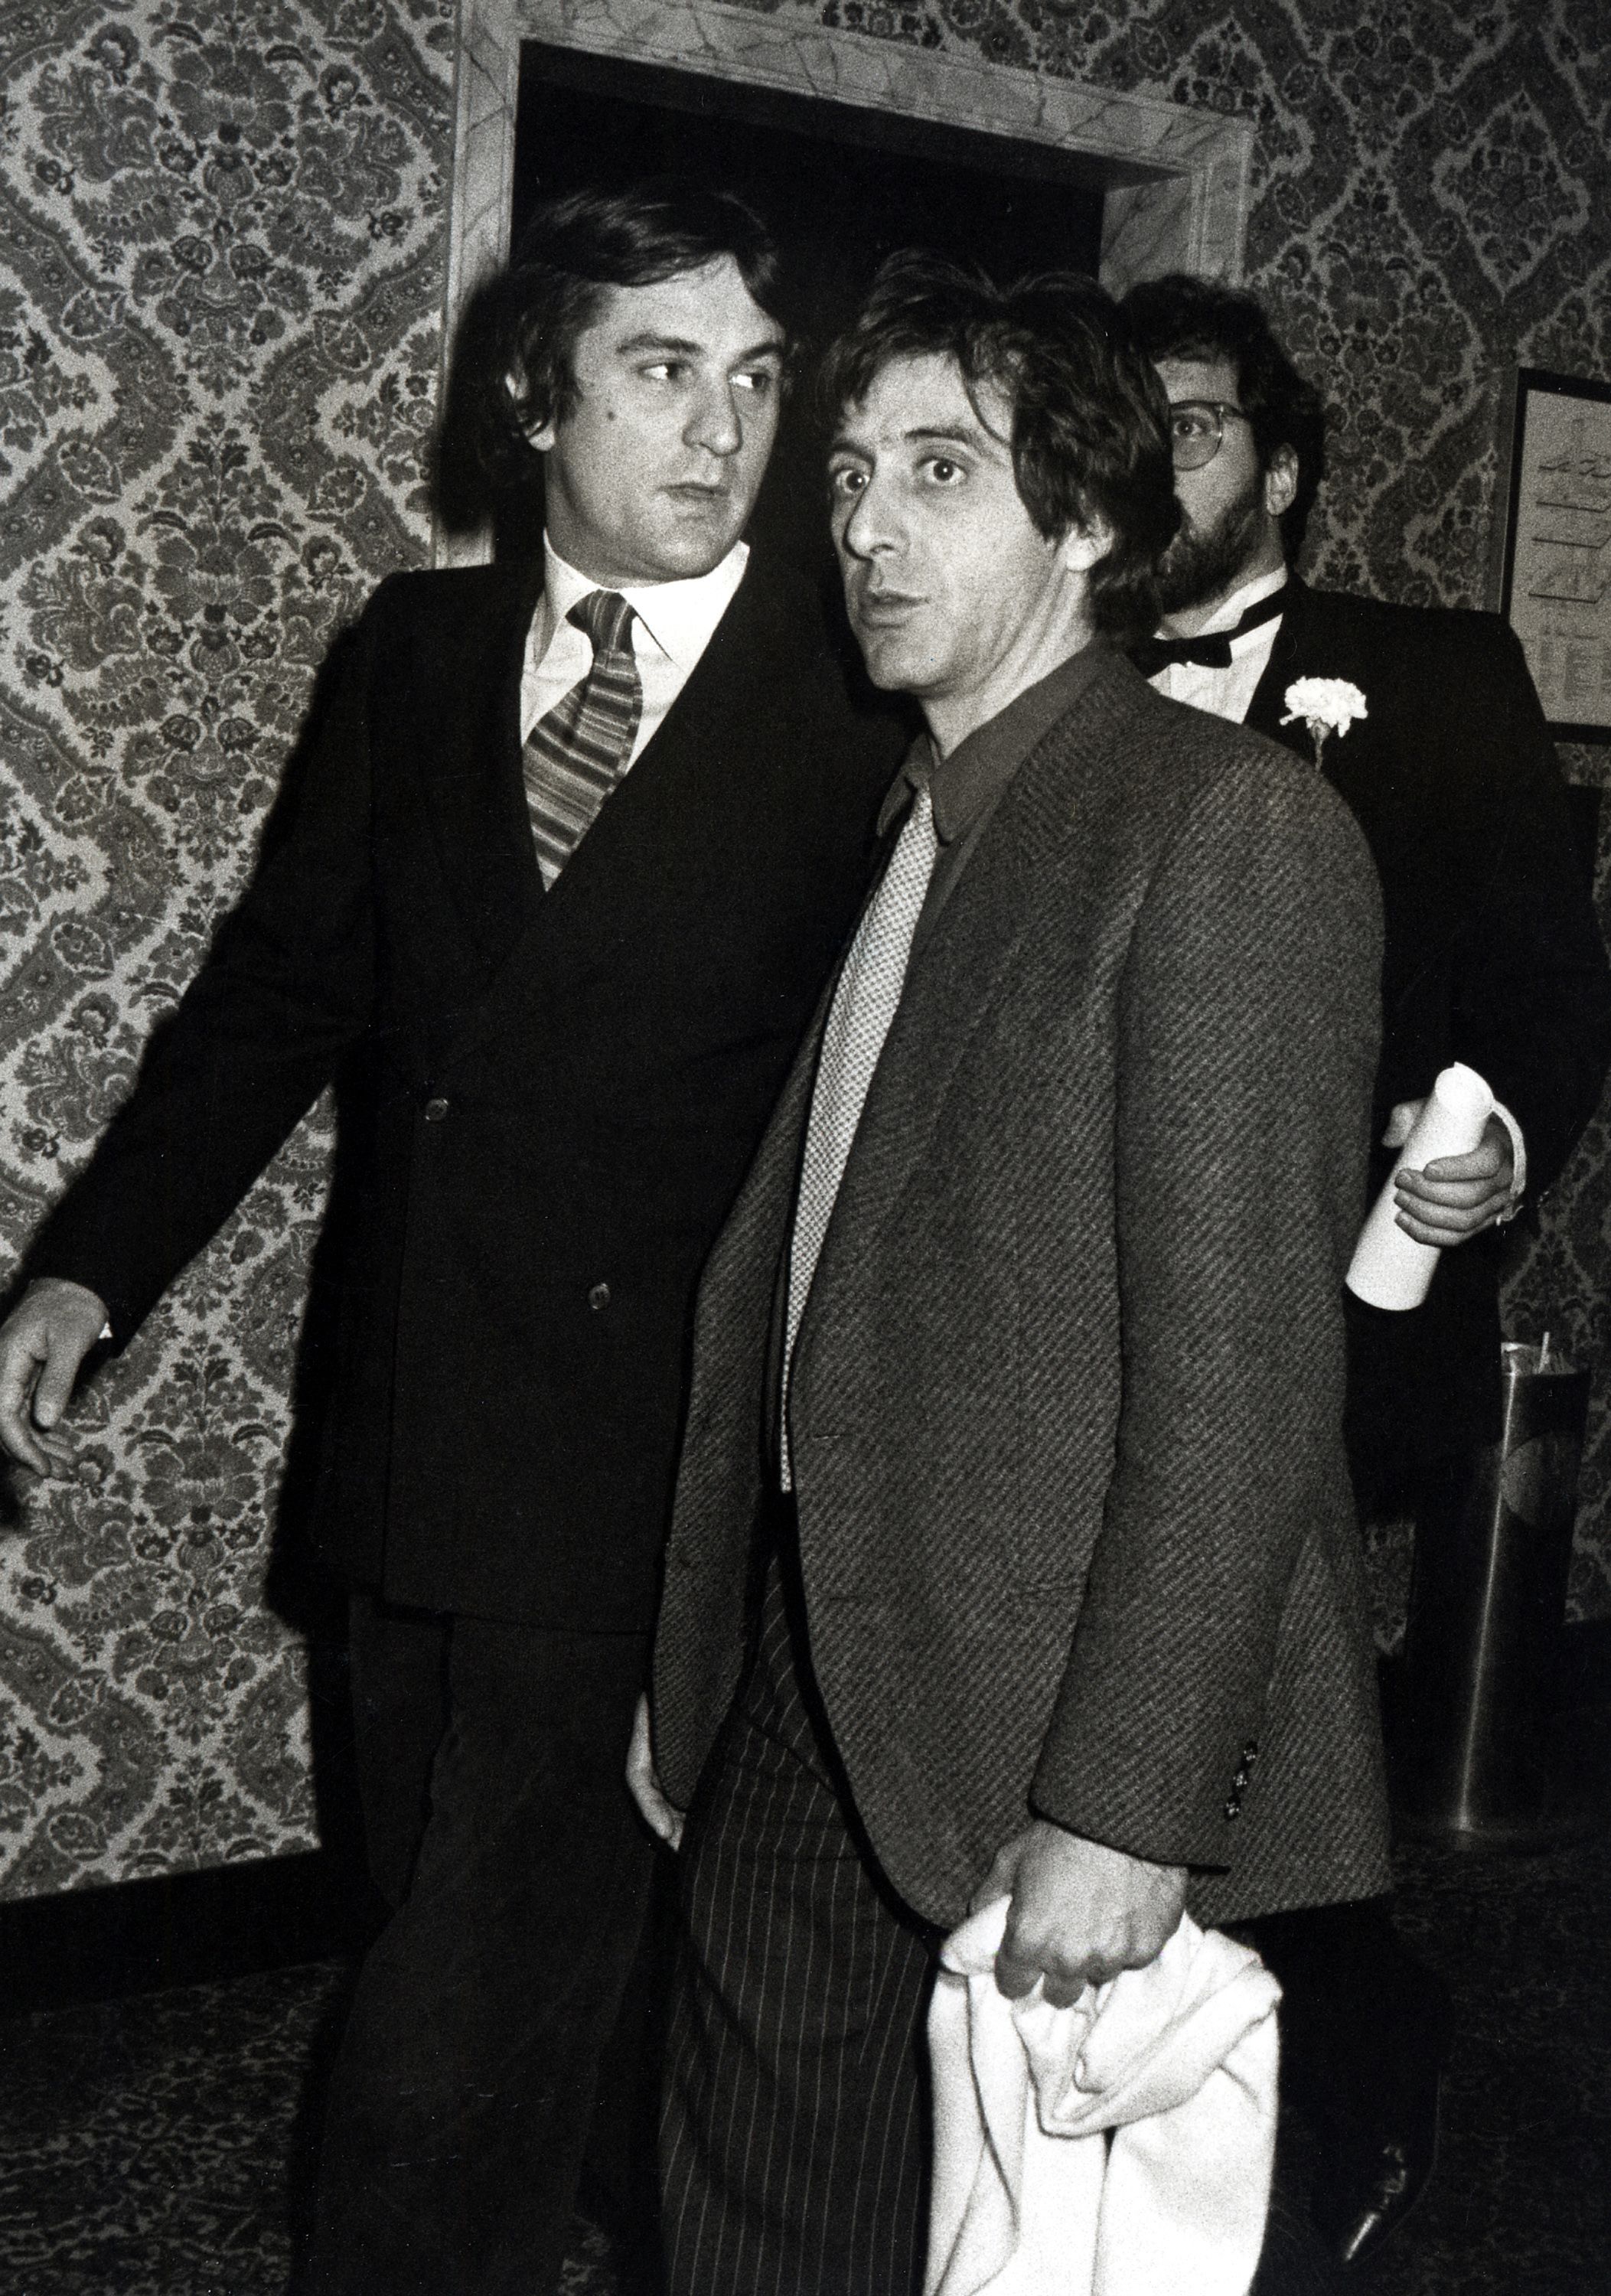 Twitter'S Robert De Niro And Al Pacino Hotness Debate Is Missing The Point